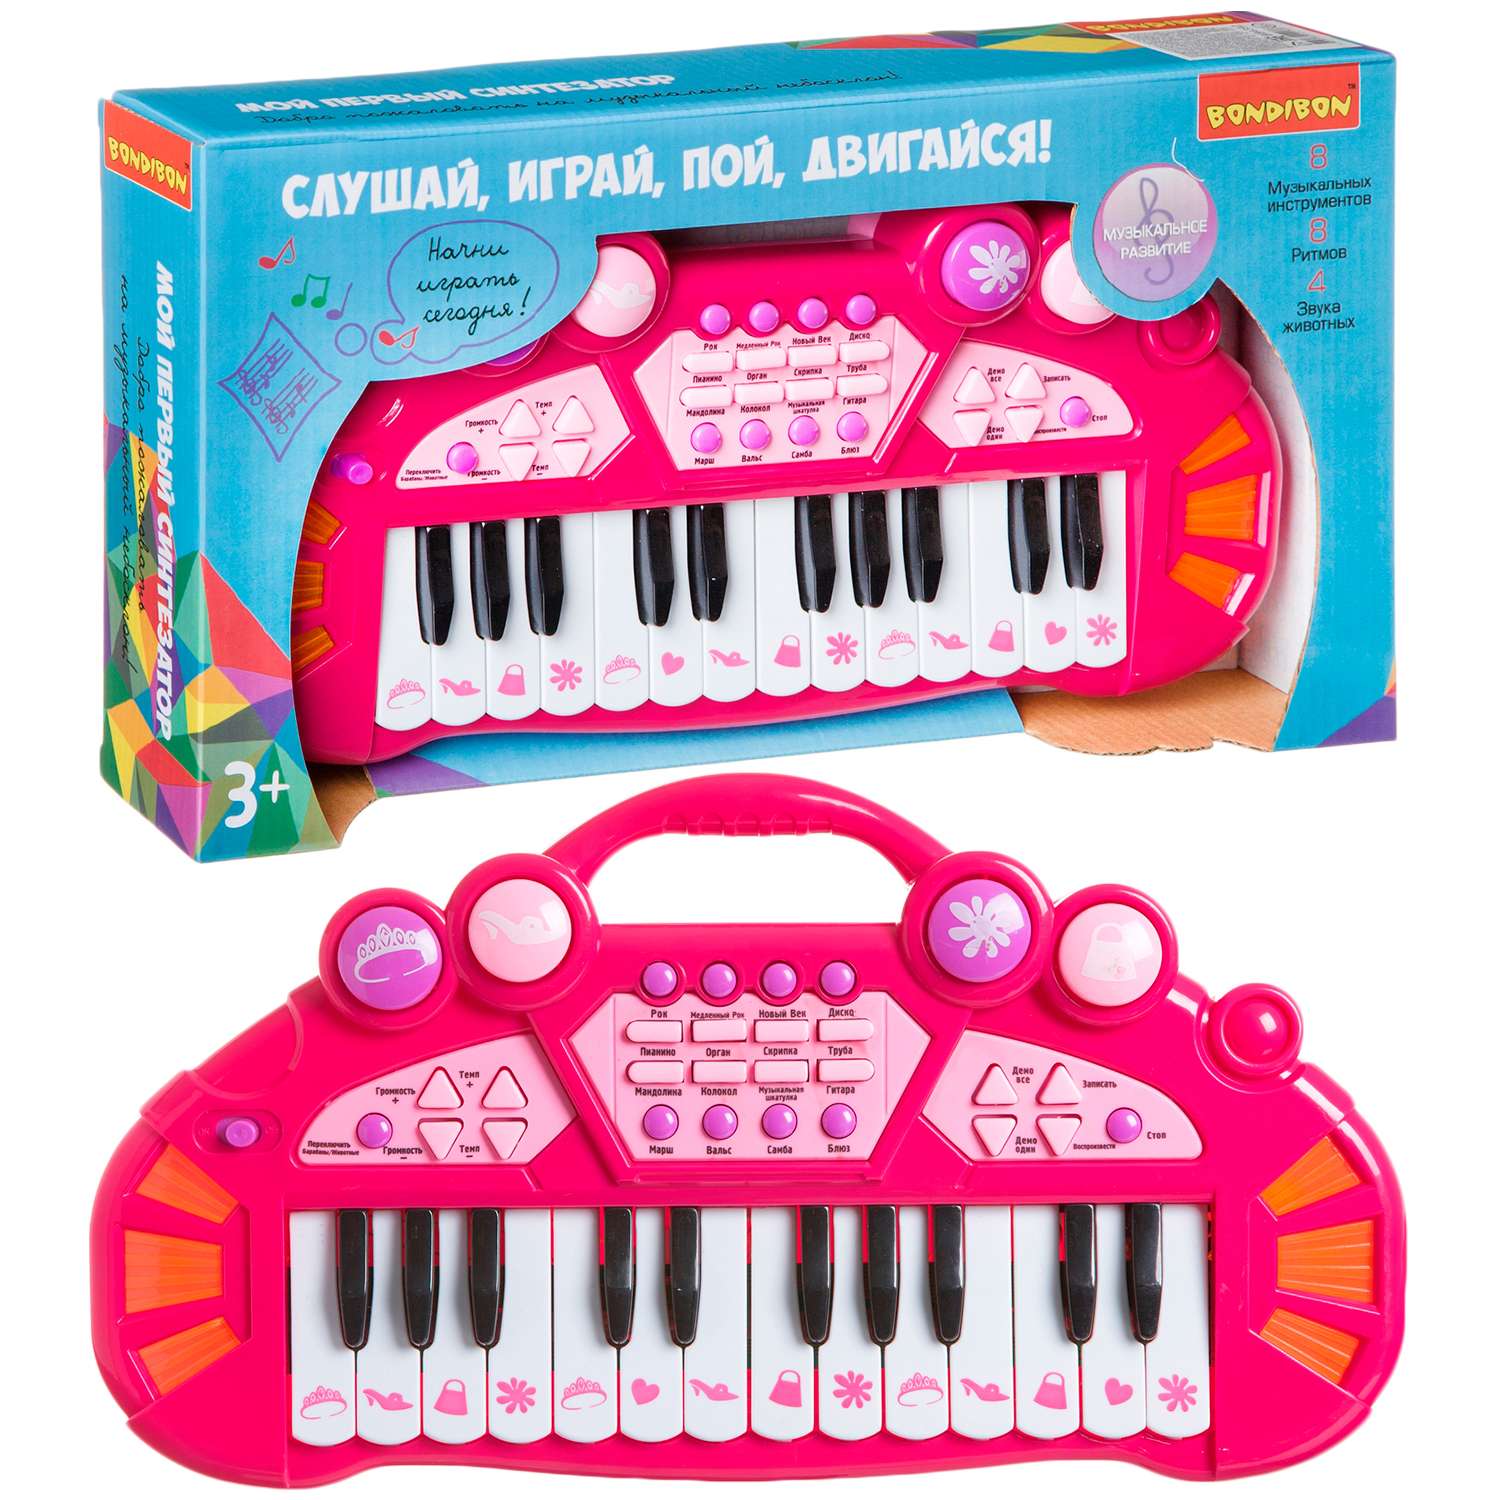 Синтезатор BONDIBON 24 клавиши со световыми эффектами розового цвета - фото 1